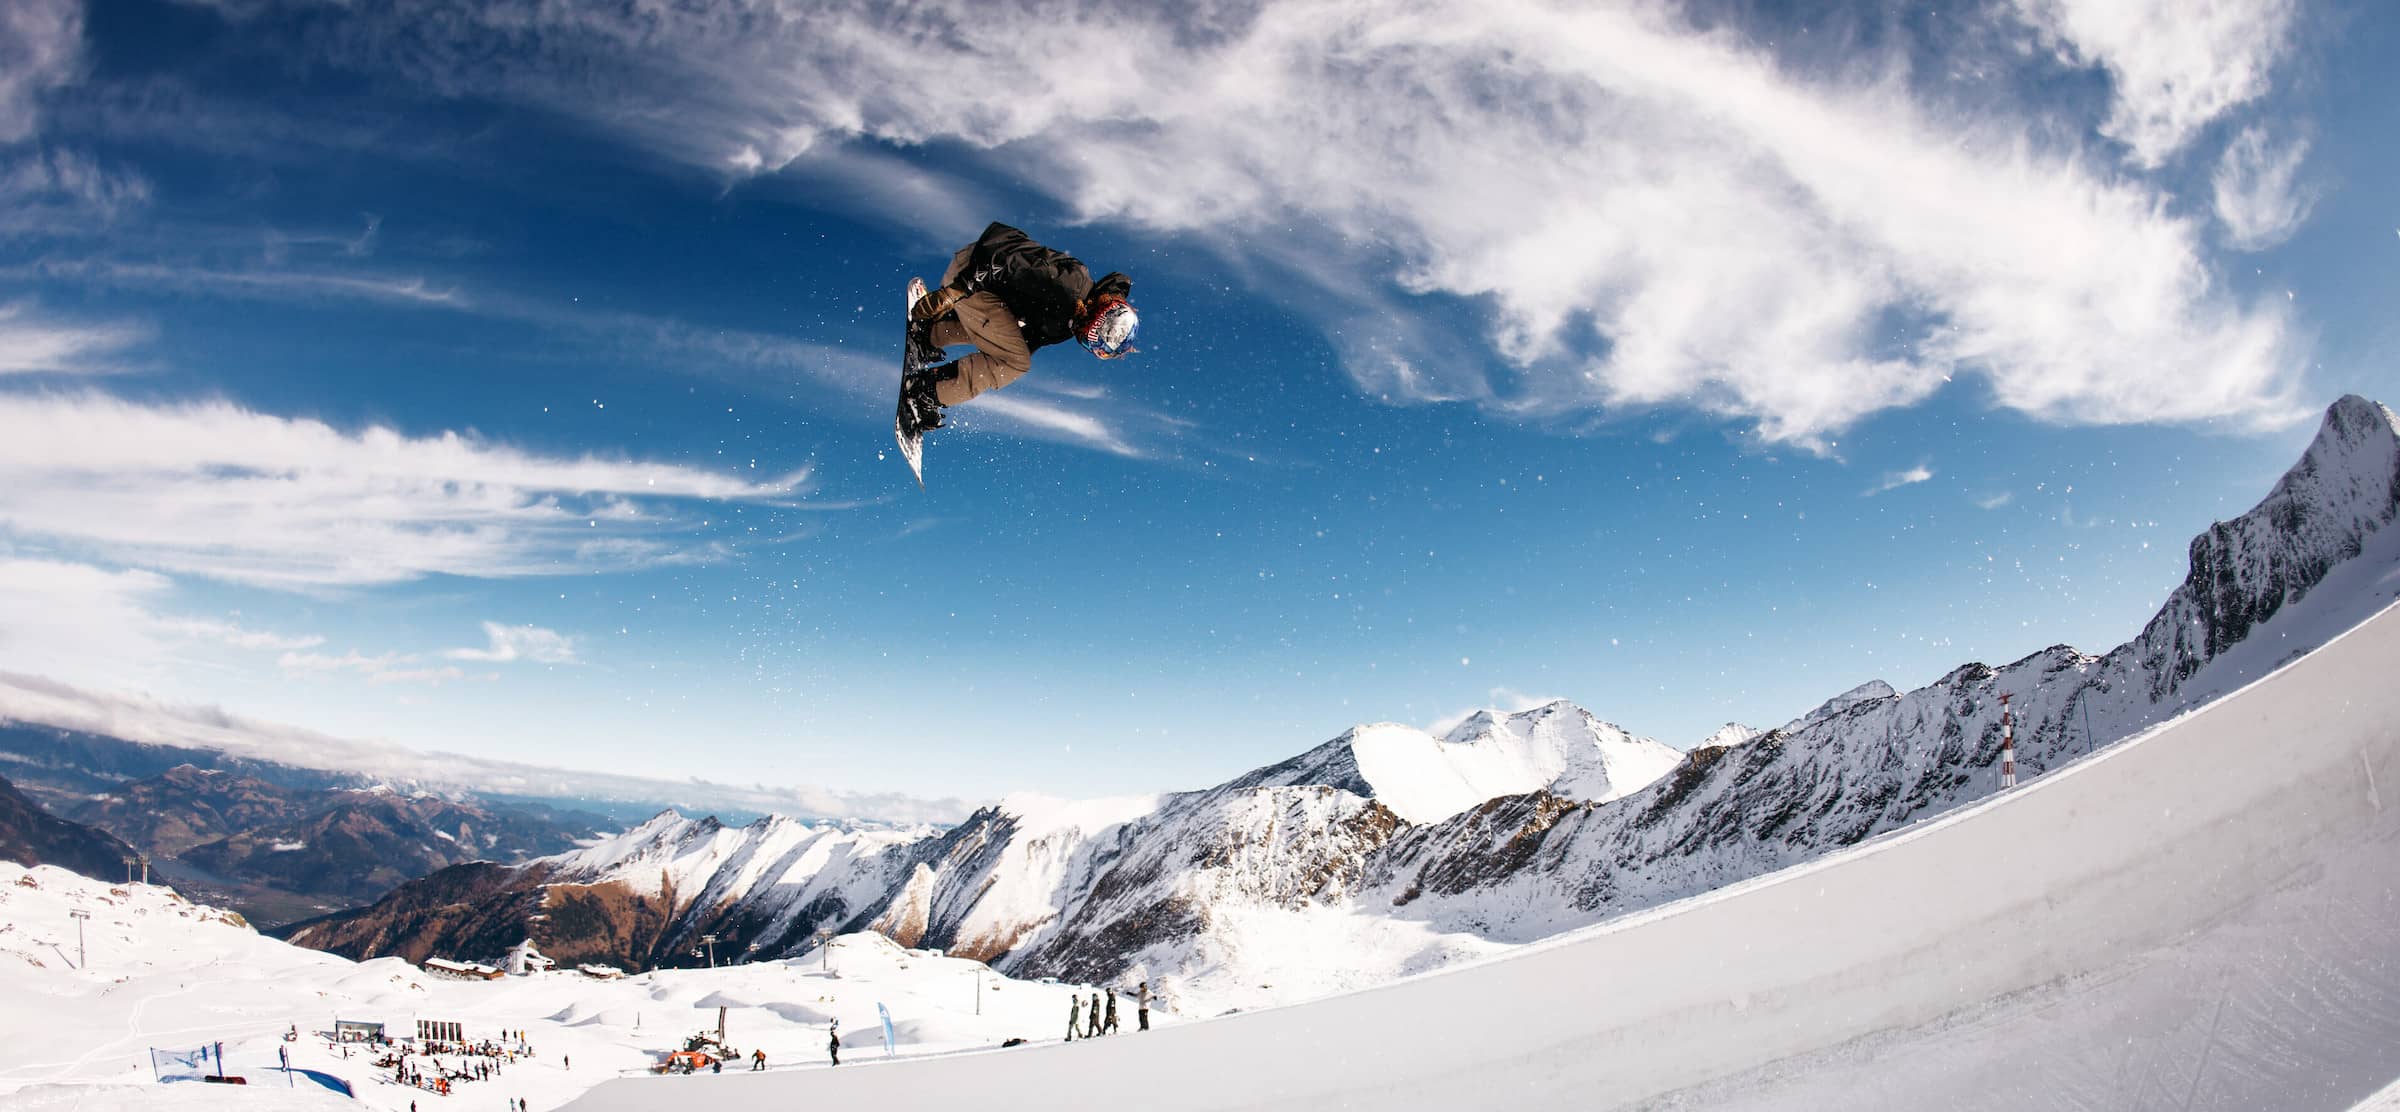 Australian valentino guseli claims snowboard big air title as austrian wins on home snow again